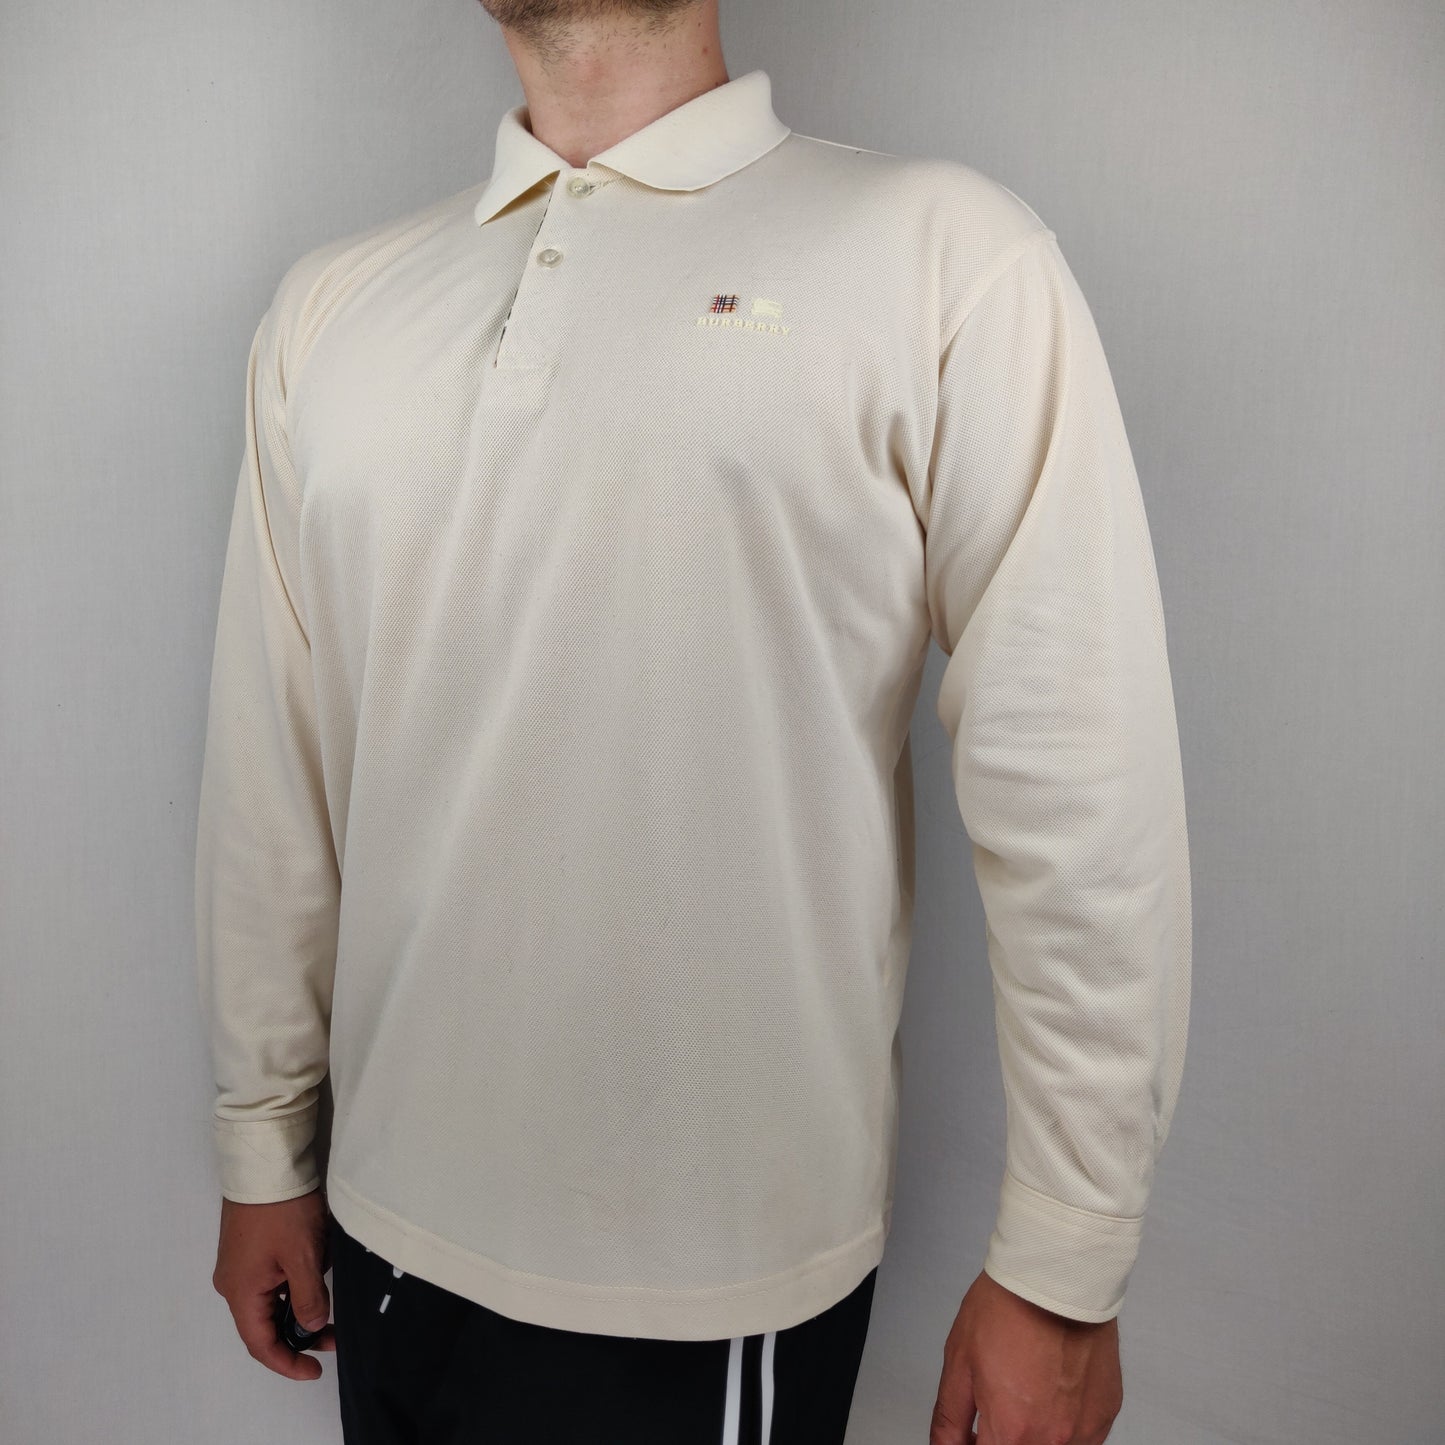 Burberry London White Long Sleeve Cotton Polo Shirt Men Size XL